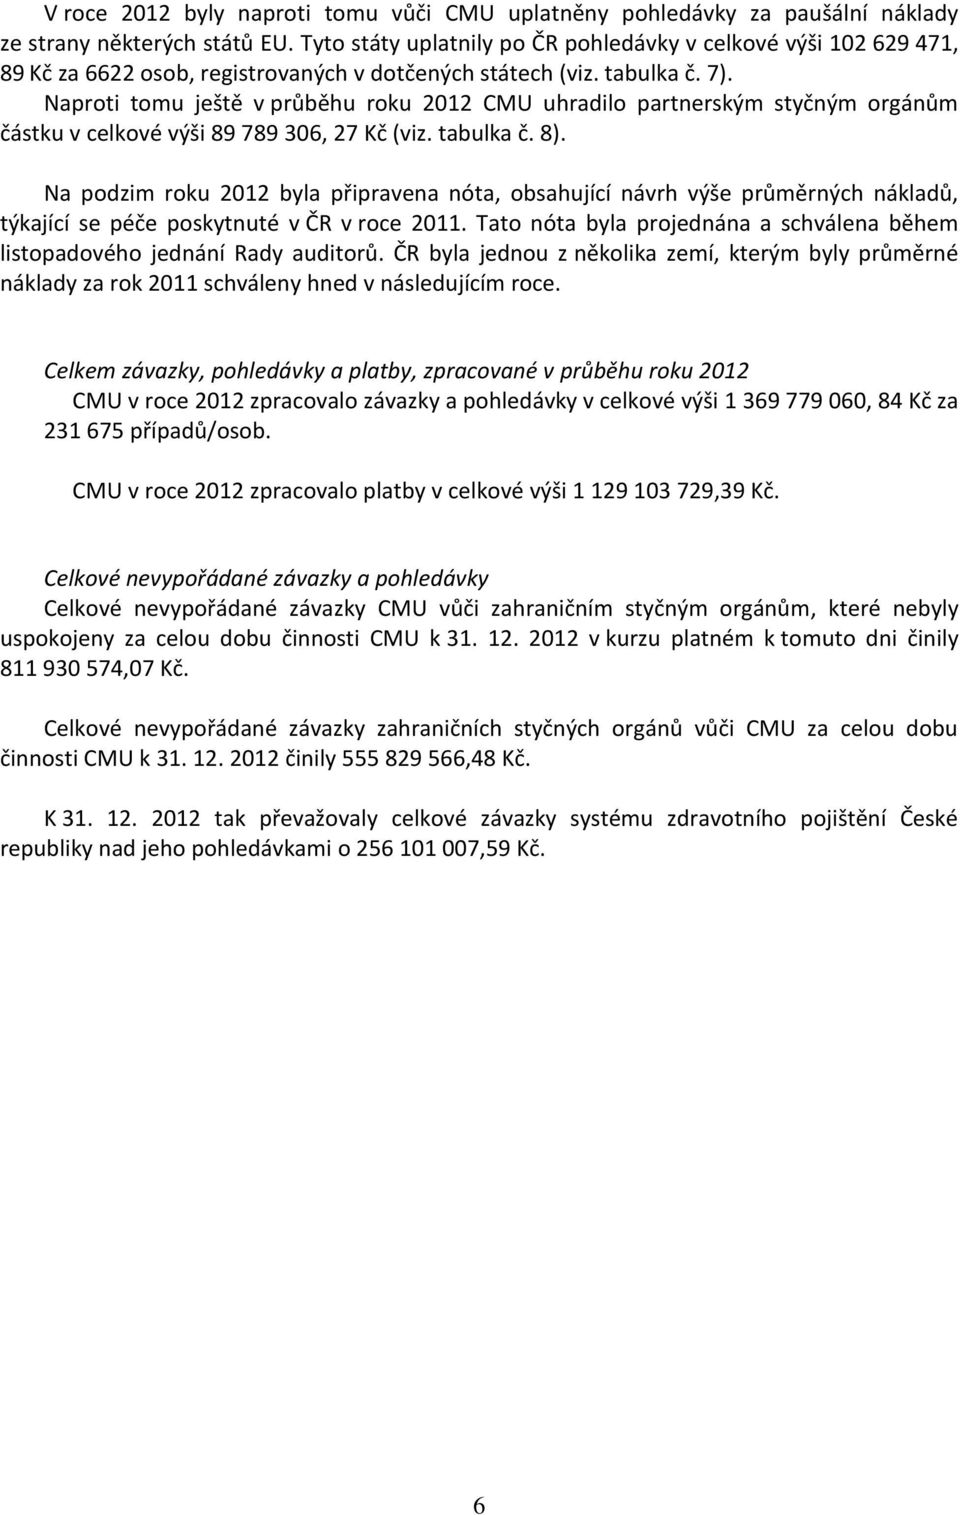 Naproti tomu ještě v průběhu roku 2012 CMU uhradilo partnerským styčným orgánům částku v celkové výši 89 789 306, 27 Kč (viz. tabulka č. 8).